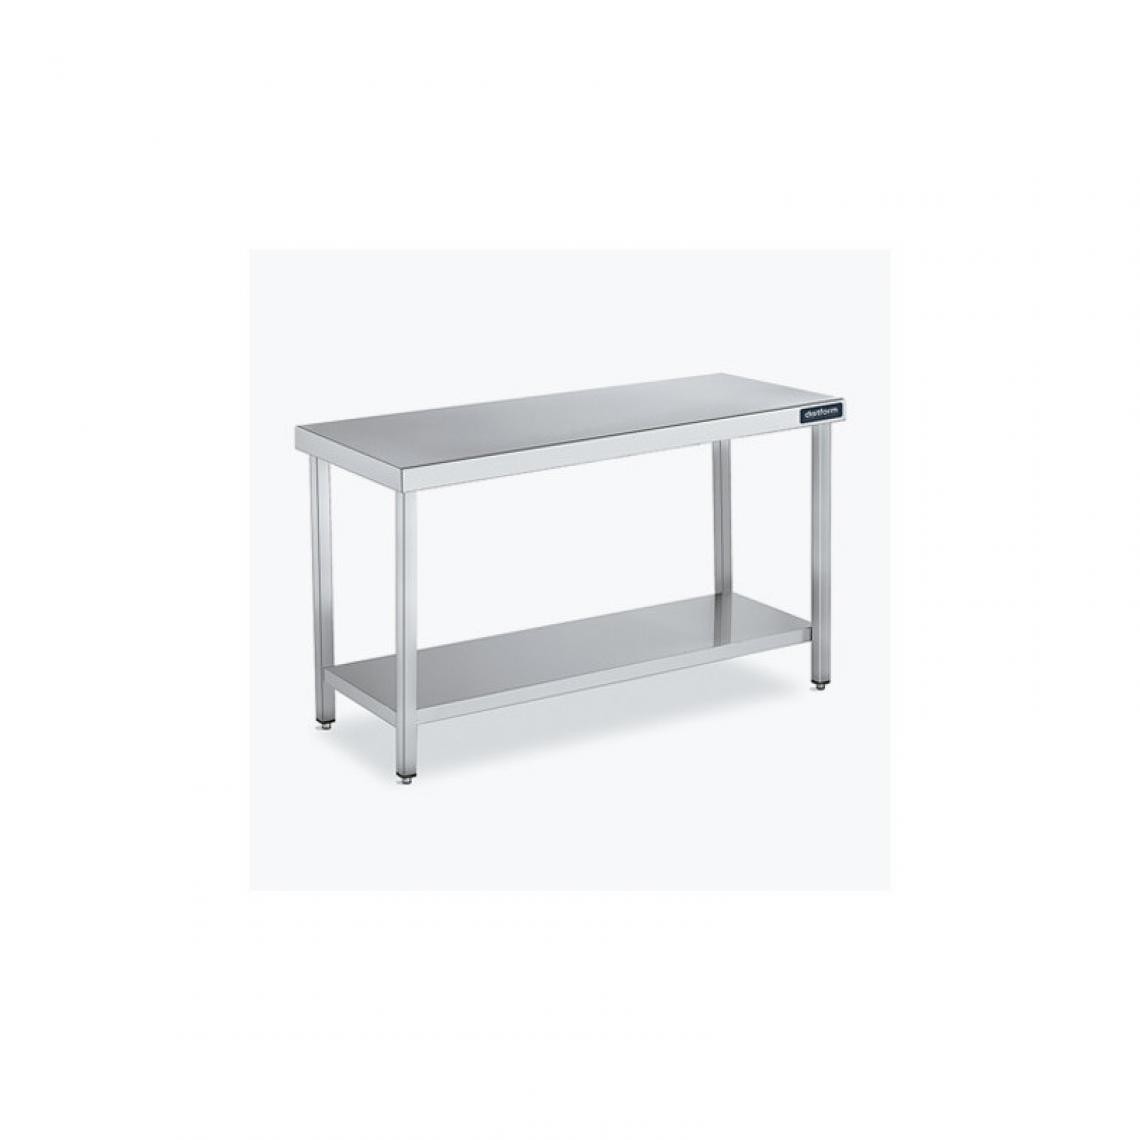 DISTFORM - Table Centrale 600x700X600 avec Étagère - Distform - Inox 18/101900x700x600mm - Tables à manger